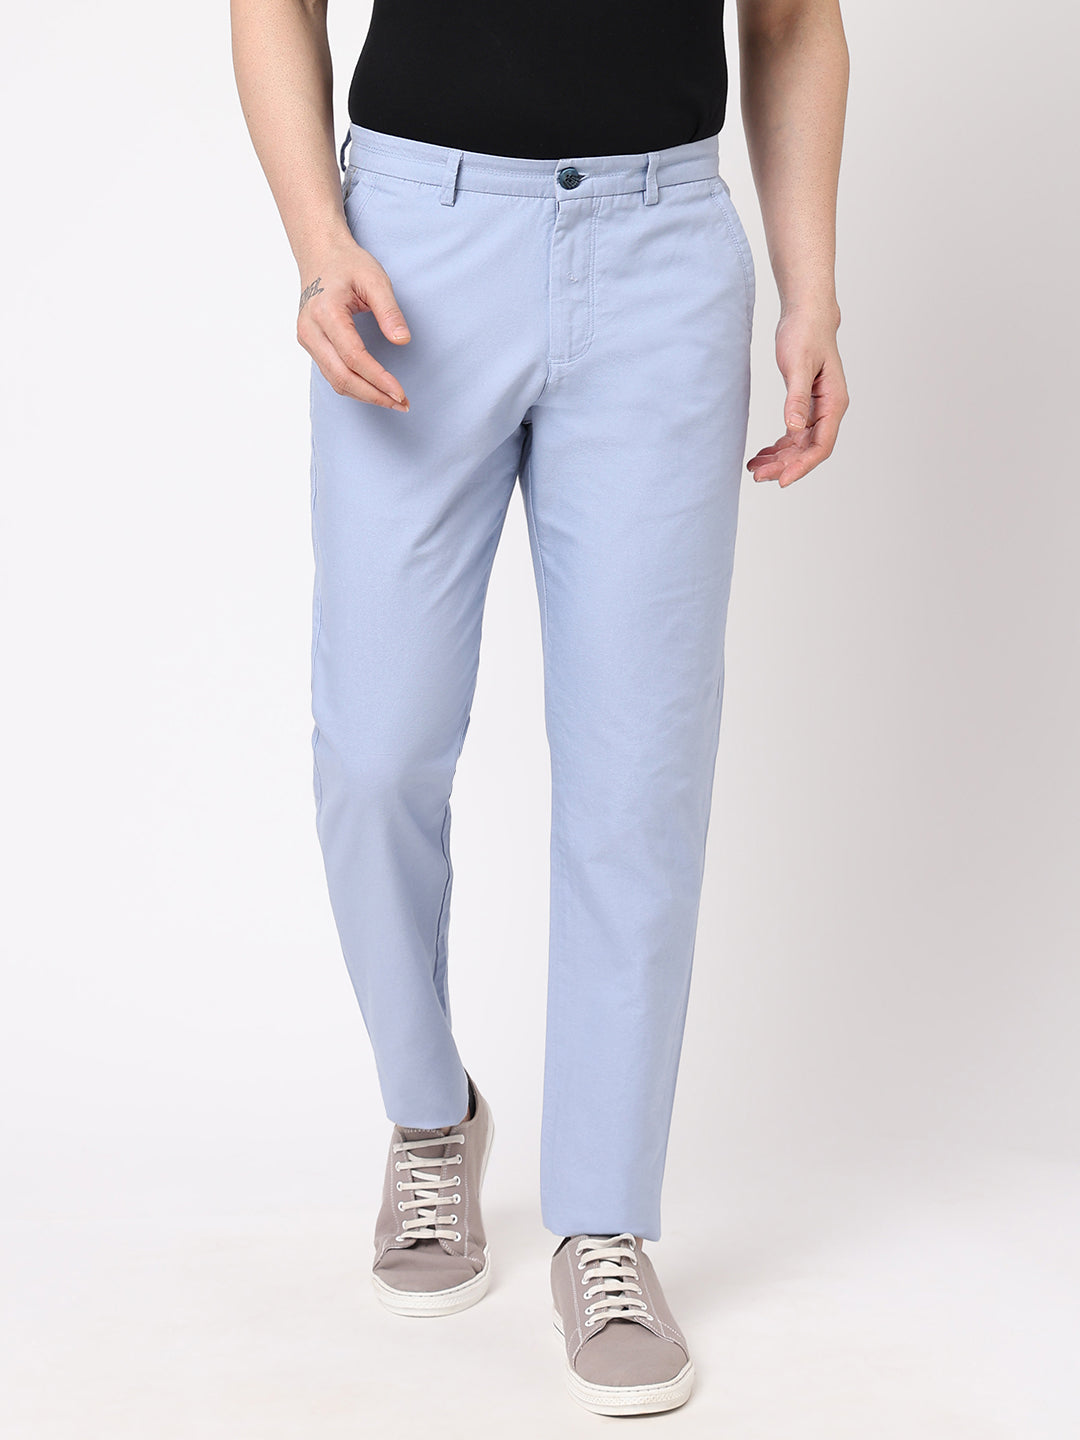 Men's Blue 100% Cotton Slim Fit Pant